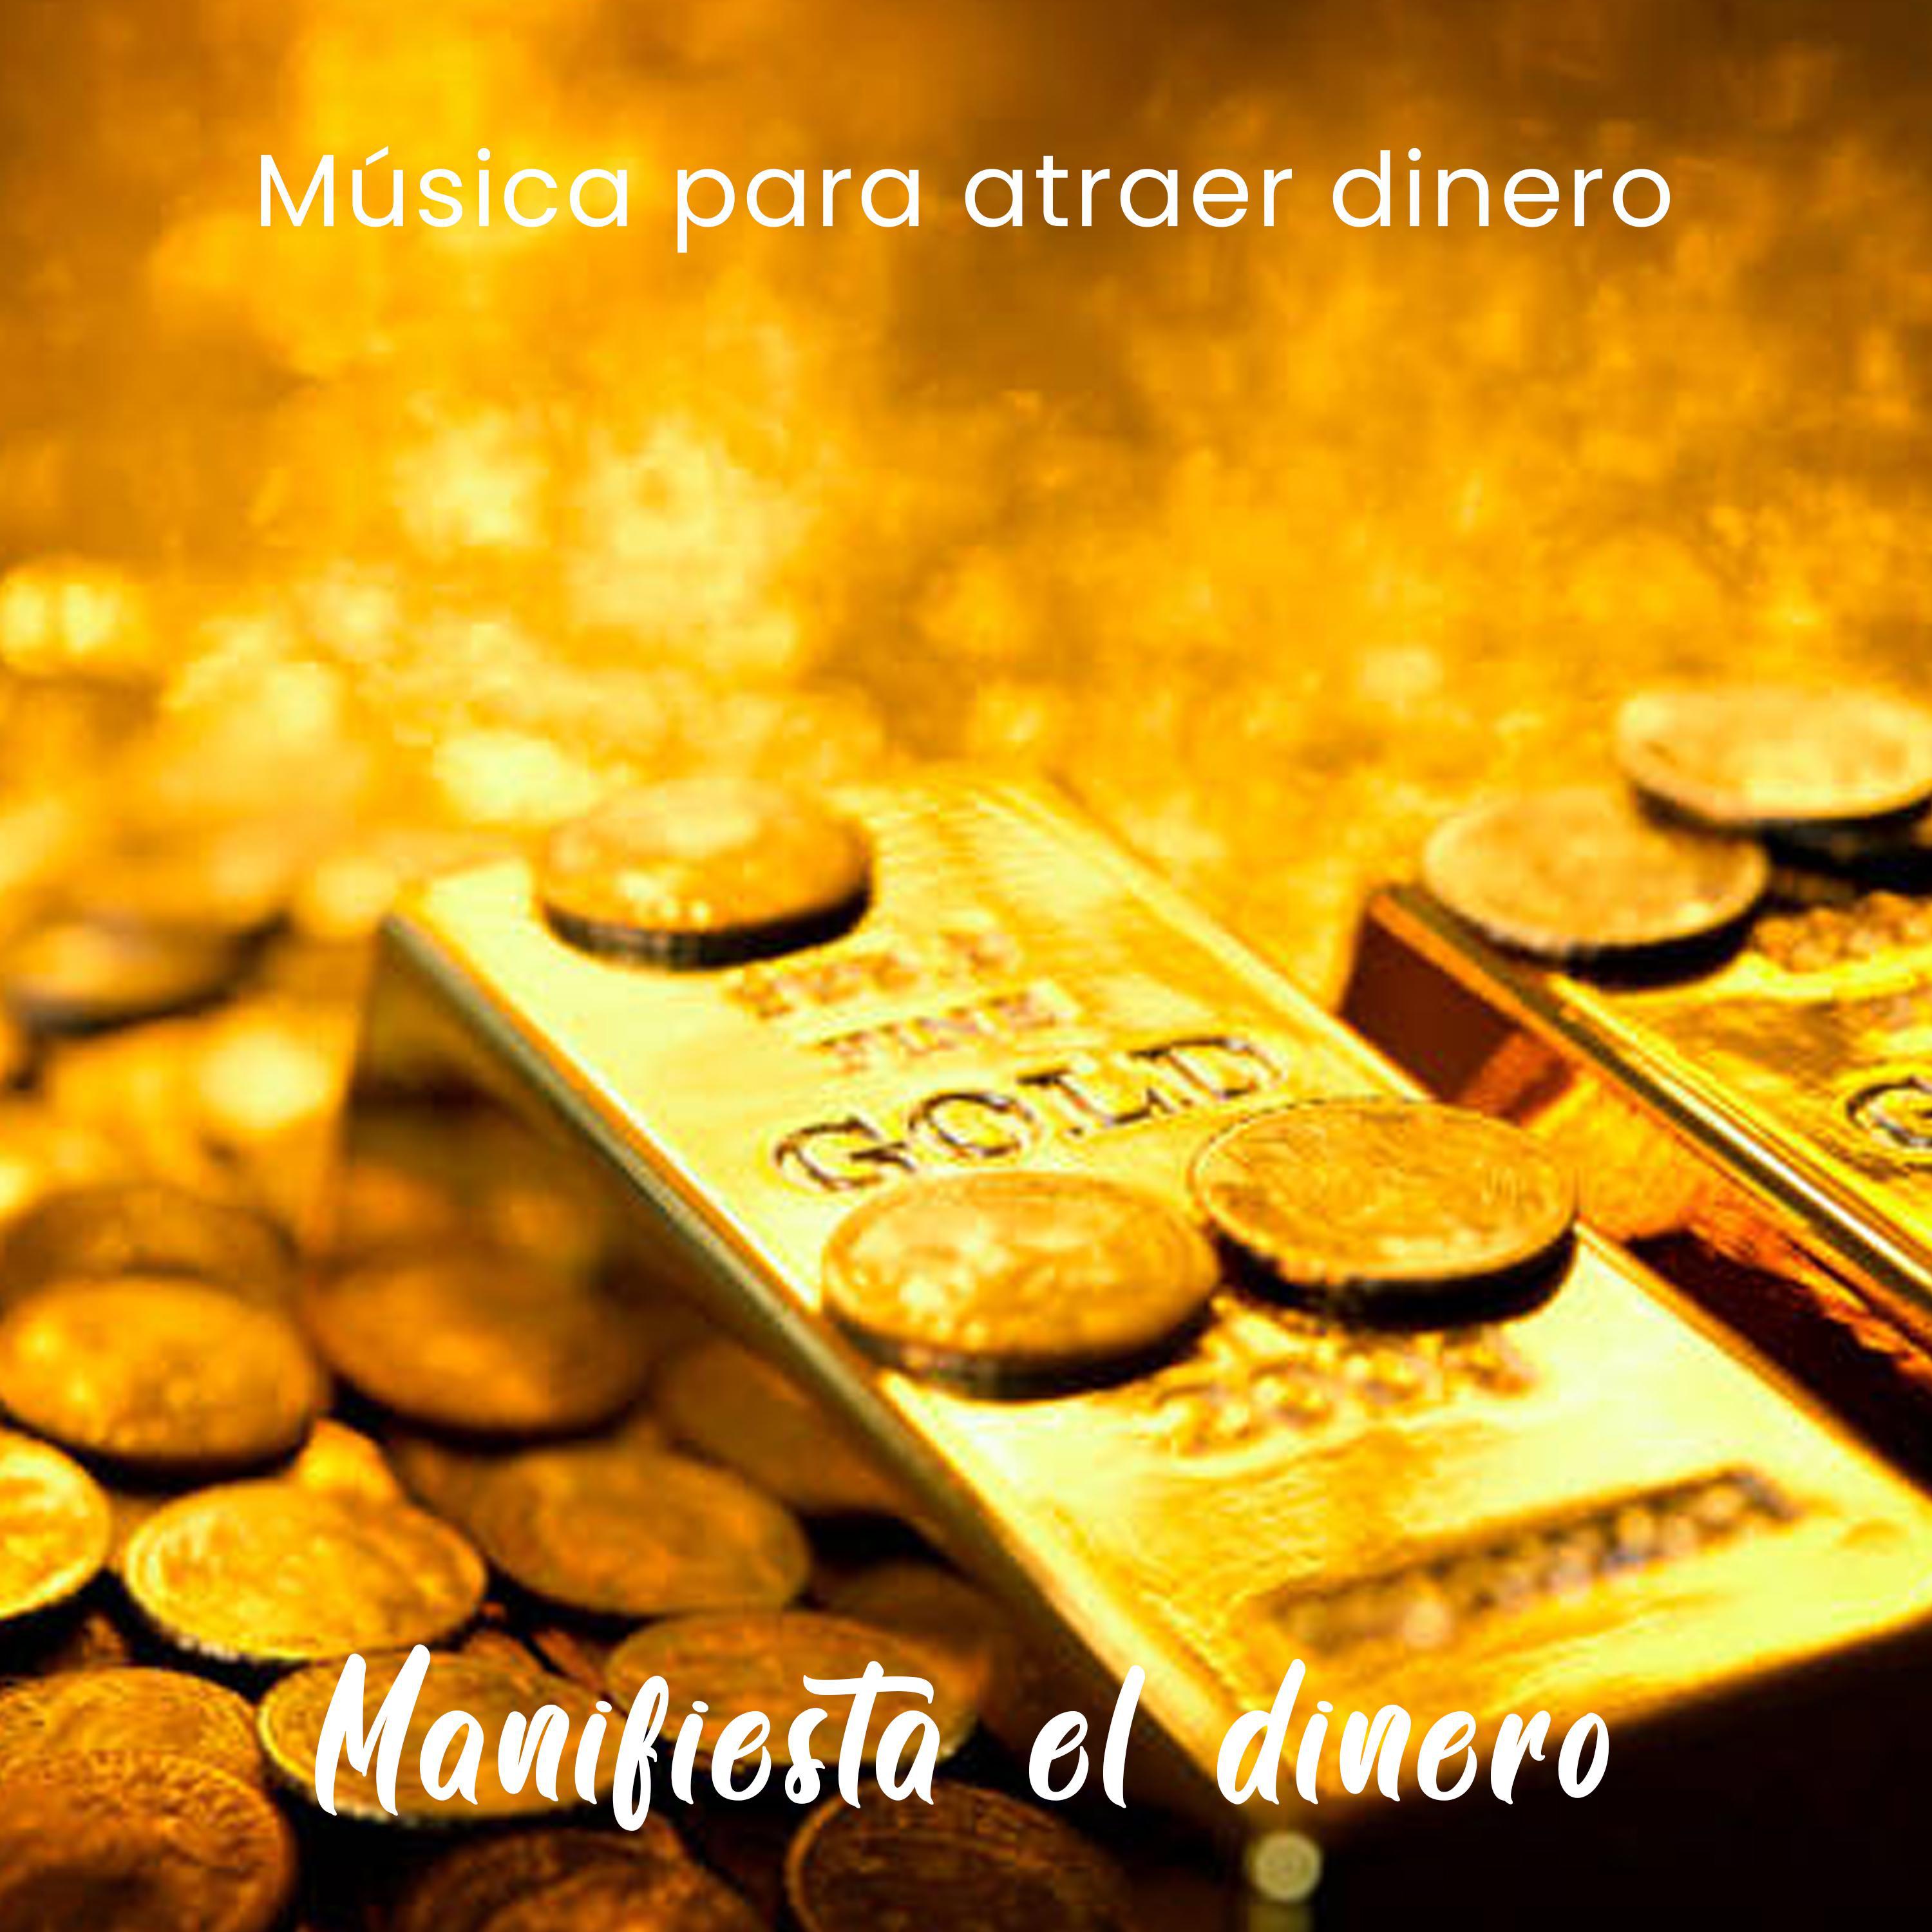 Musica para atraer dinero - Manifiesta el dinero